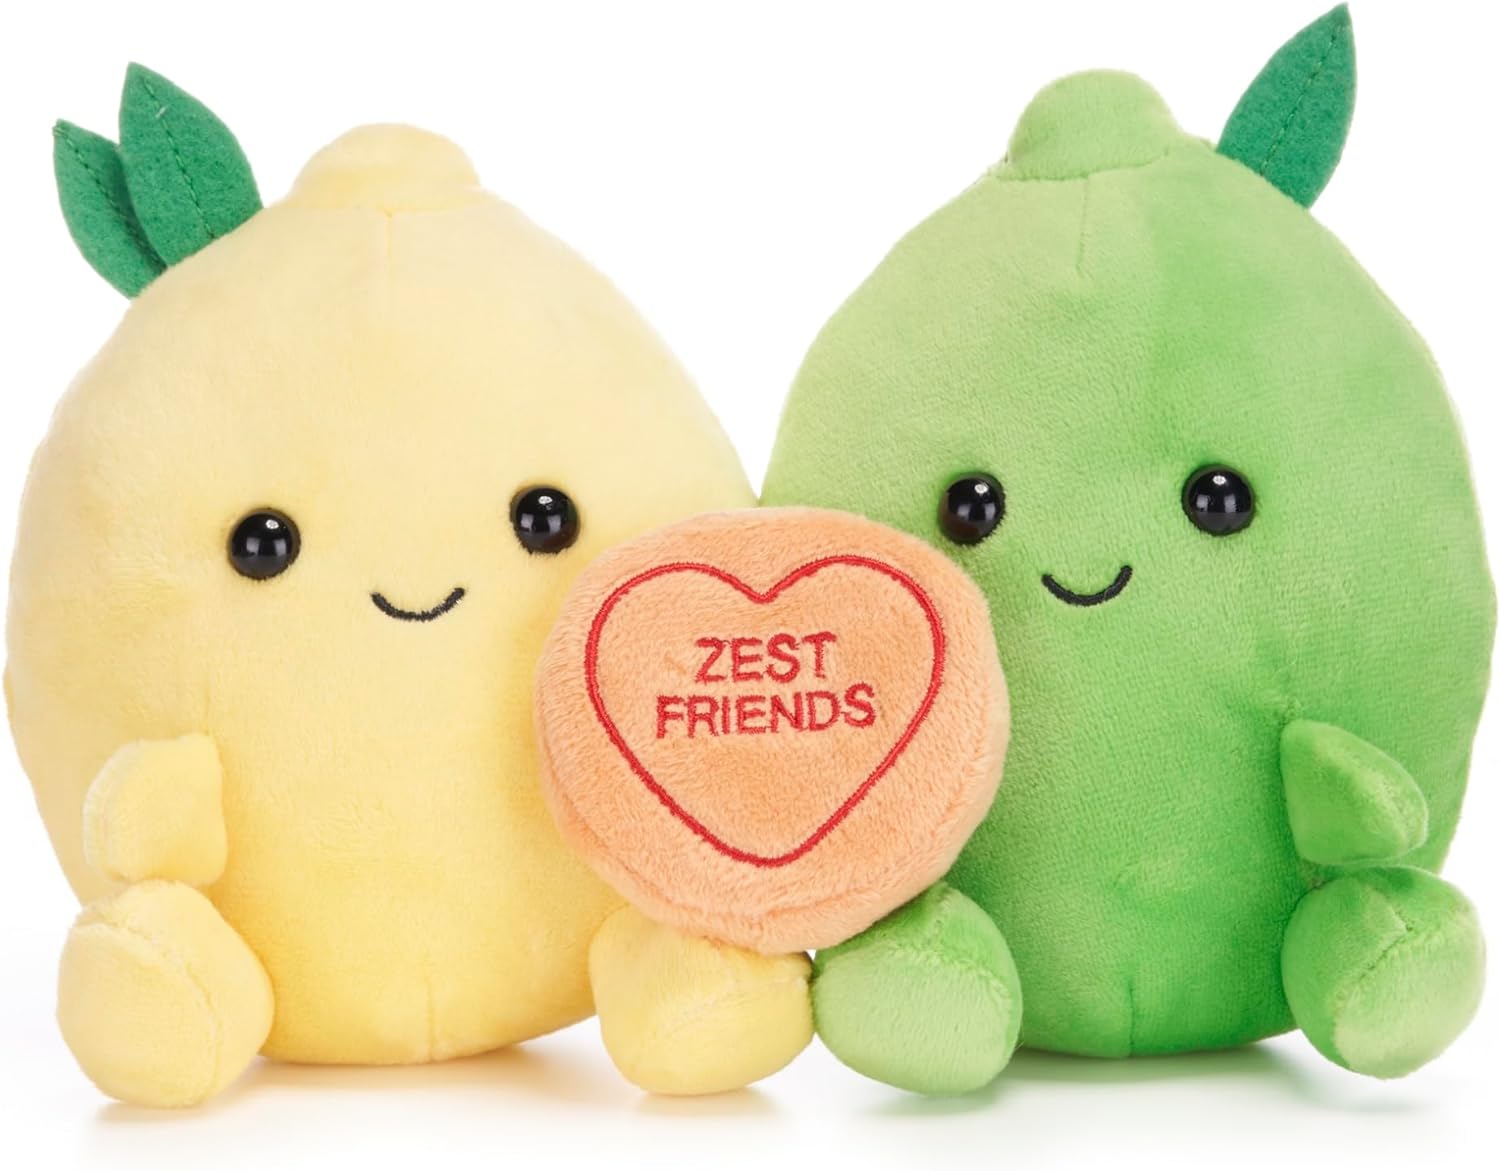 Posh Paws 20cm Swizzels Love Hearts ?Zest Friends? Lemon and Lime Soft Plush Toy Pair